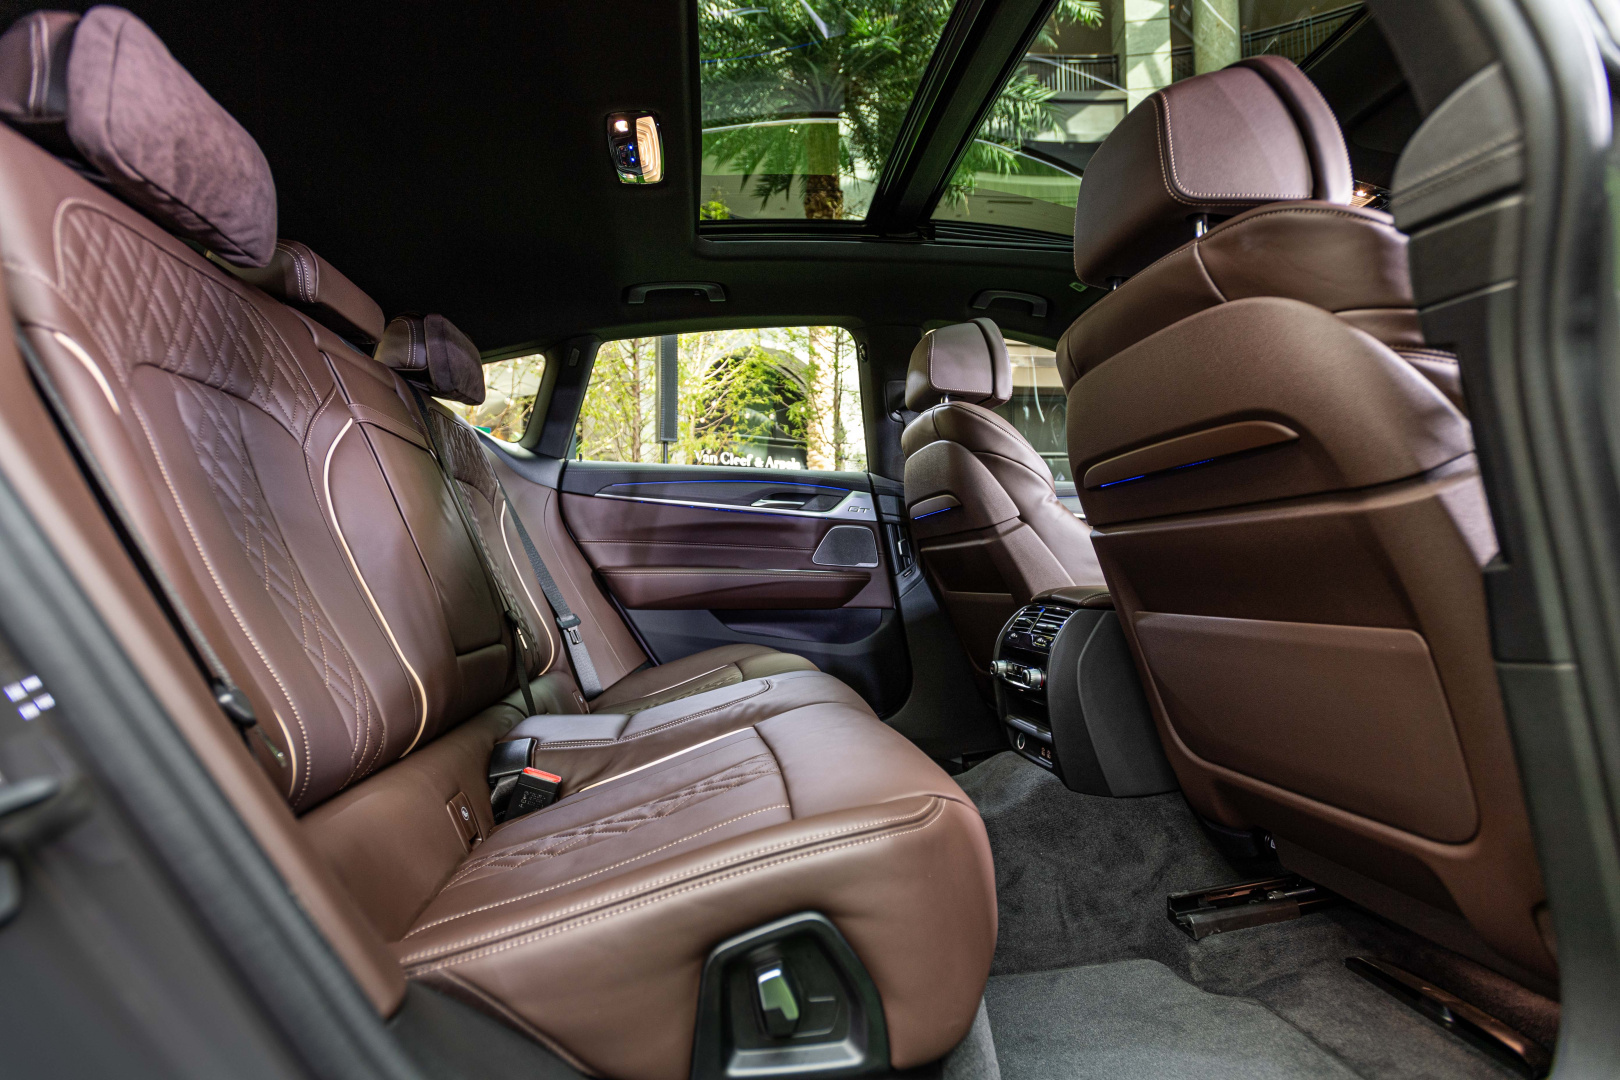 SMALL_[新聞照片六] 全新BMW 6系列Gran Turismo擁有如同頭等艙的豪華寬敞車室，搭配雙後座Alcantara麂皮頭枕、後座椅背電動調整功能，以豪華優雅之姿陪伴後座乘員享受壯闊旅途。